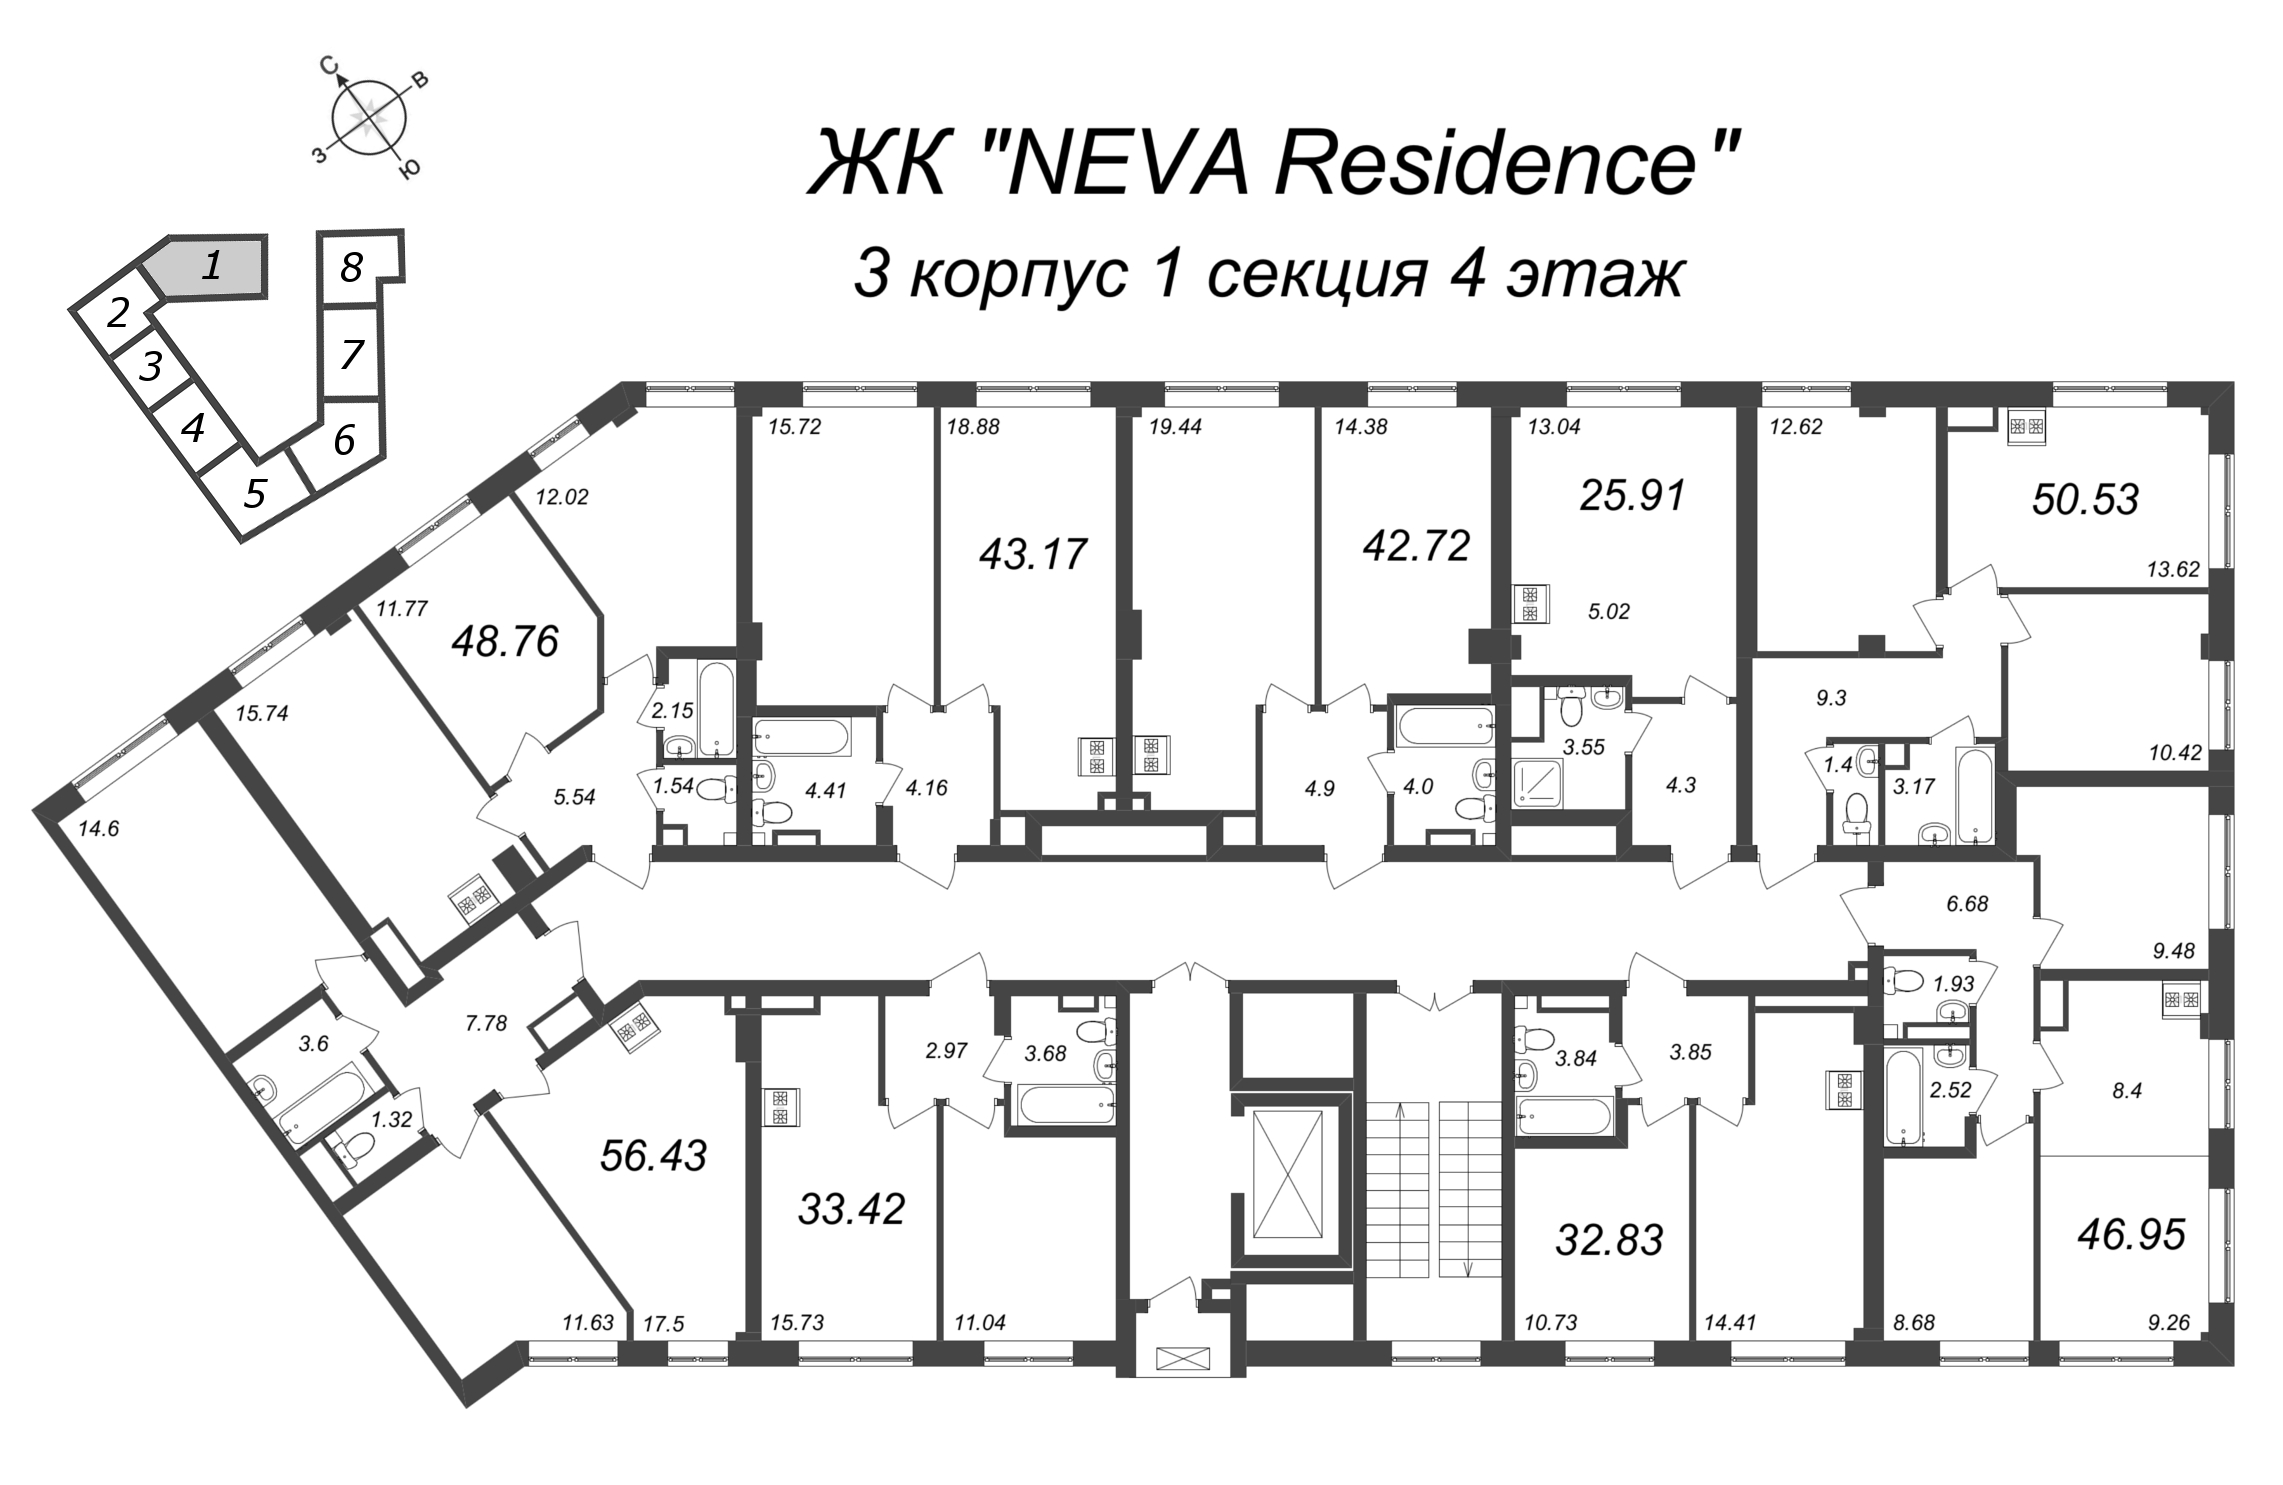 2-комнатная (Евро) квартира, 42.72 м² в ЖК "Neva Residence" - планировка этажа